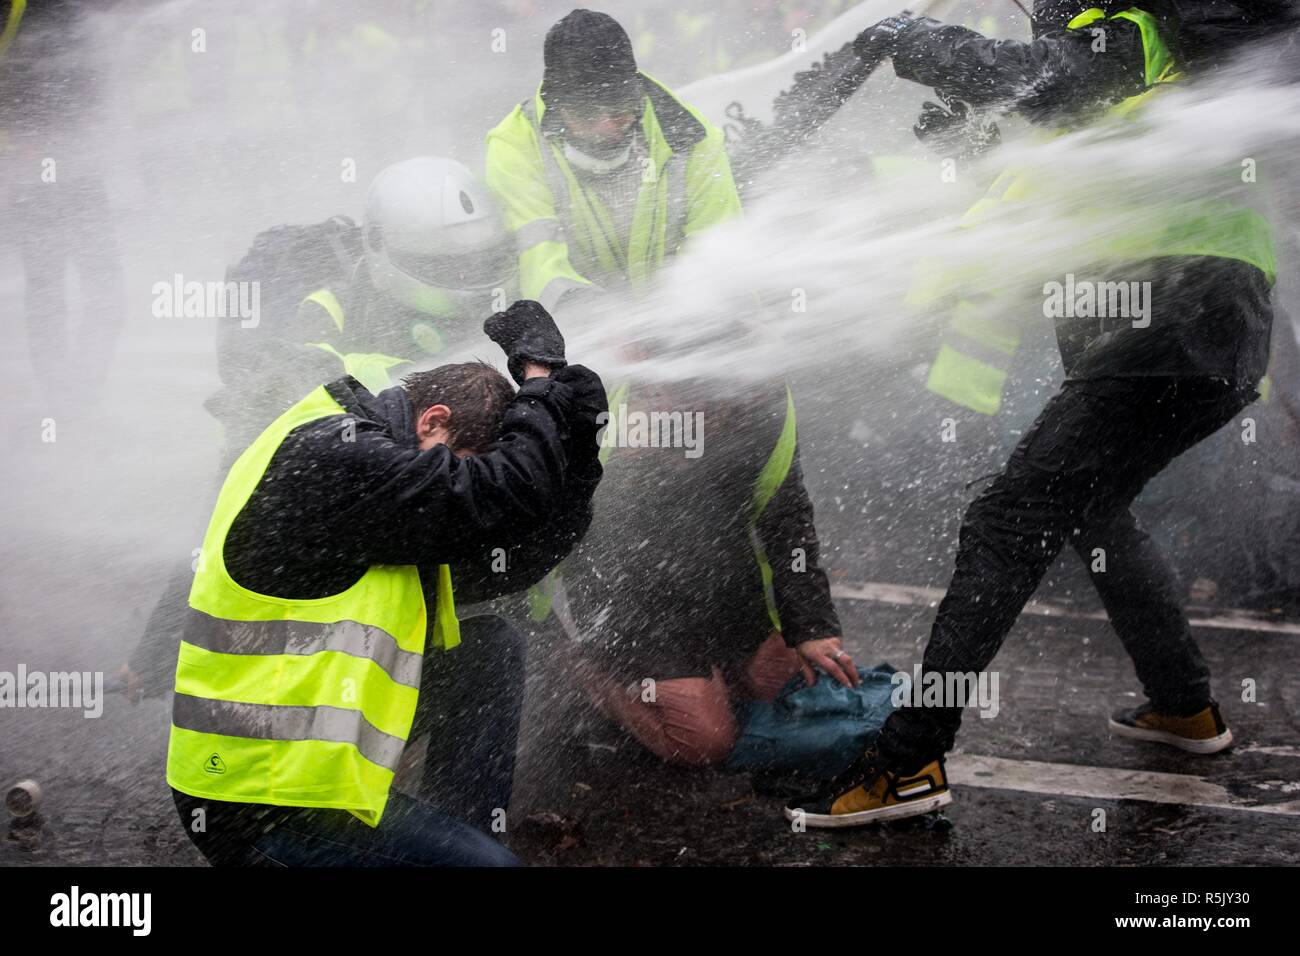 Les forces de police voit en utilisant le canon à eau sur les manifestants Gilet  jaune près de l'Arc de Triomphe au cours d'une 'Yellow Vest' manifestation  à Paris. Sans aucune affiliation